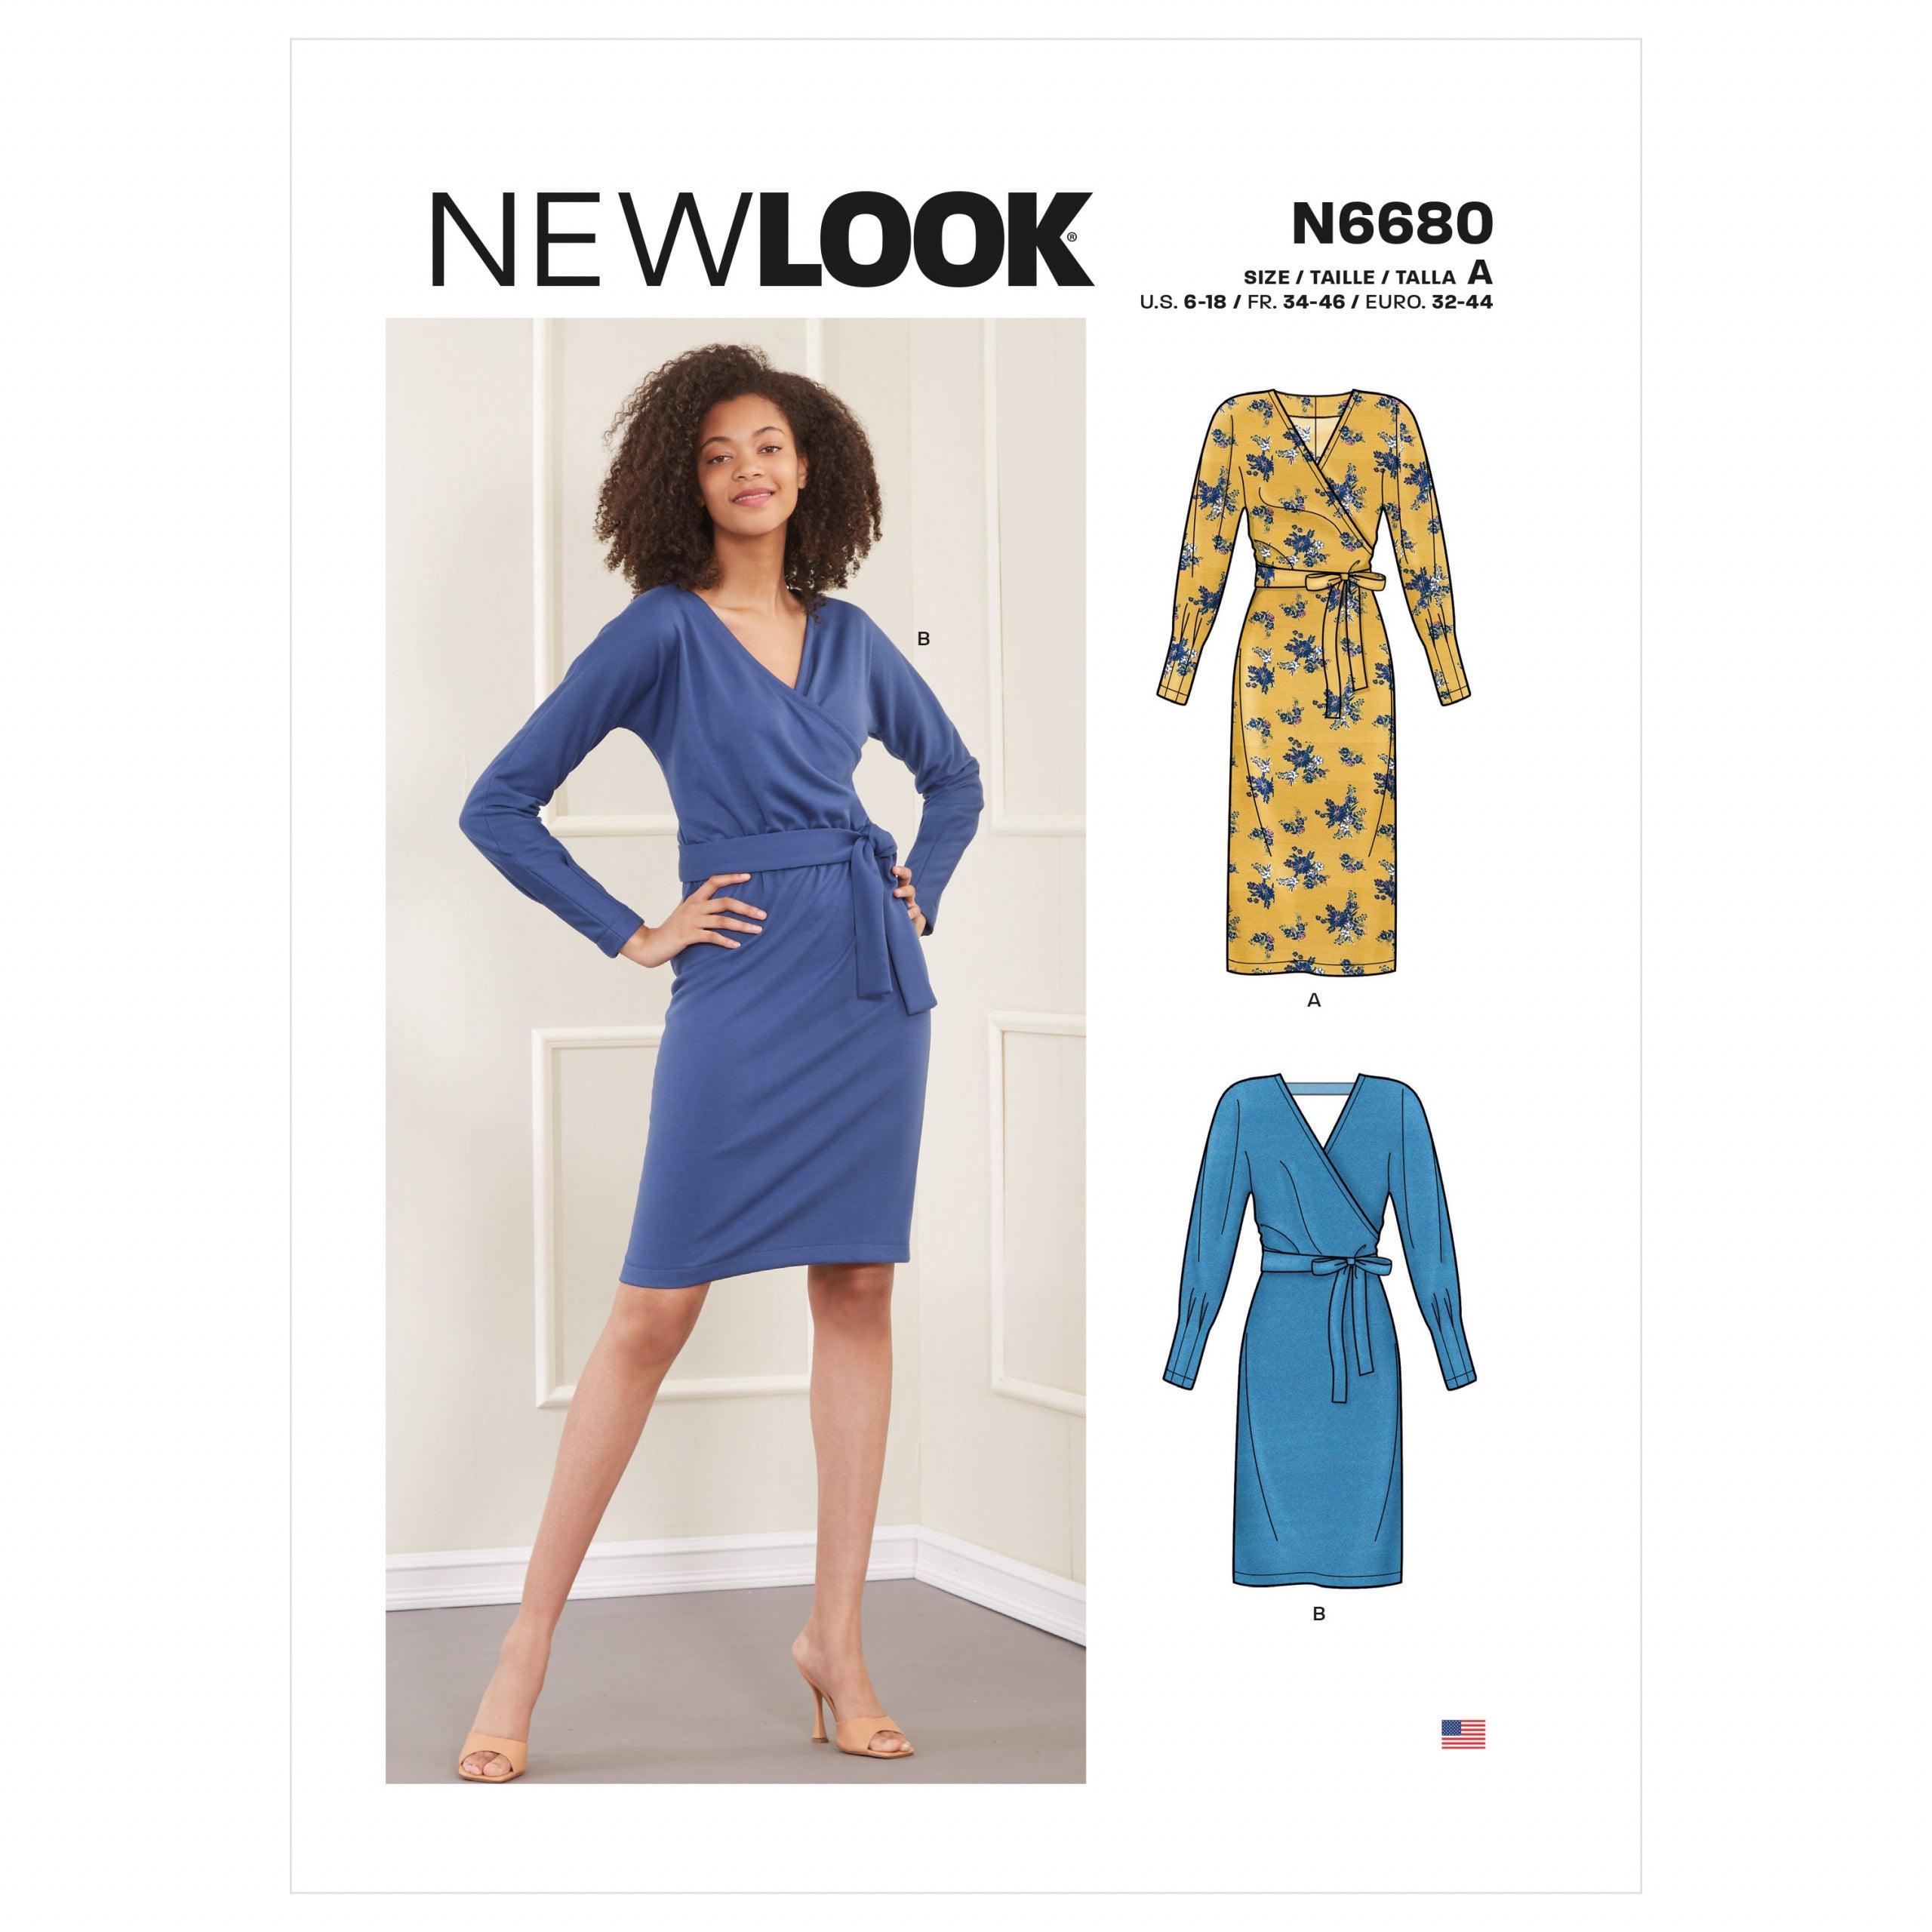 New Look N6680 Misses' Dress Sewing Pattern